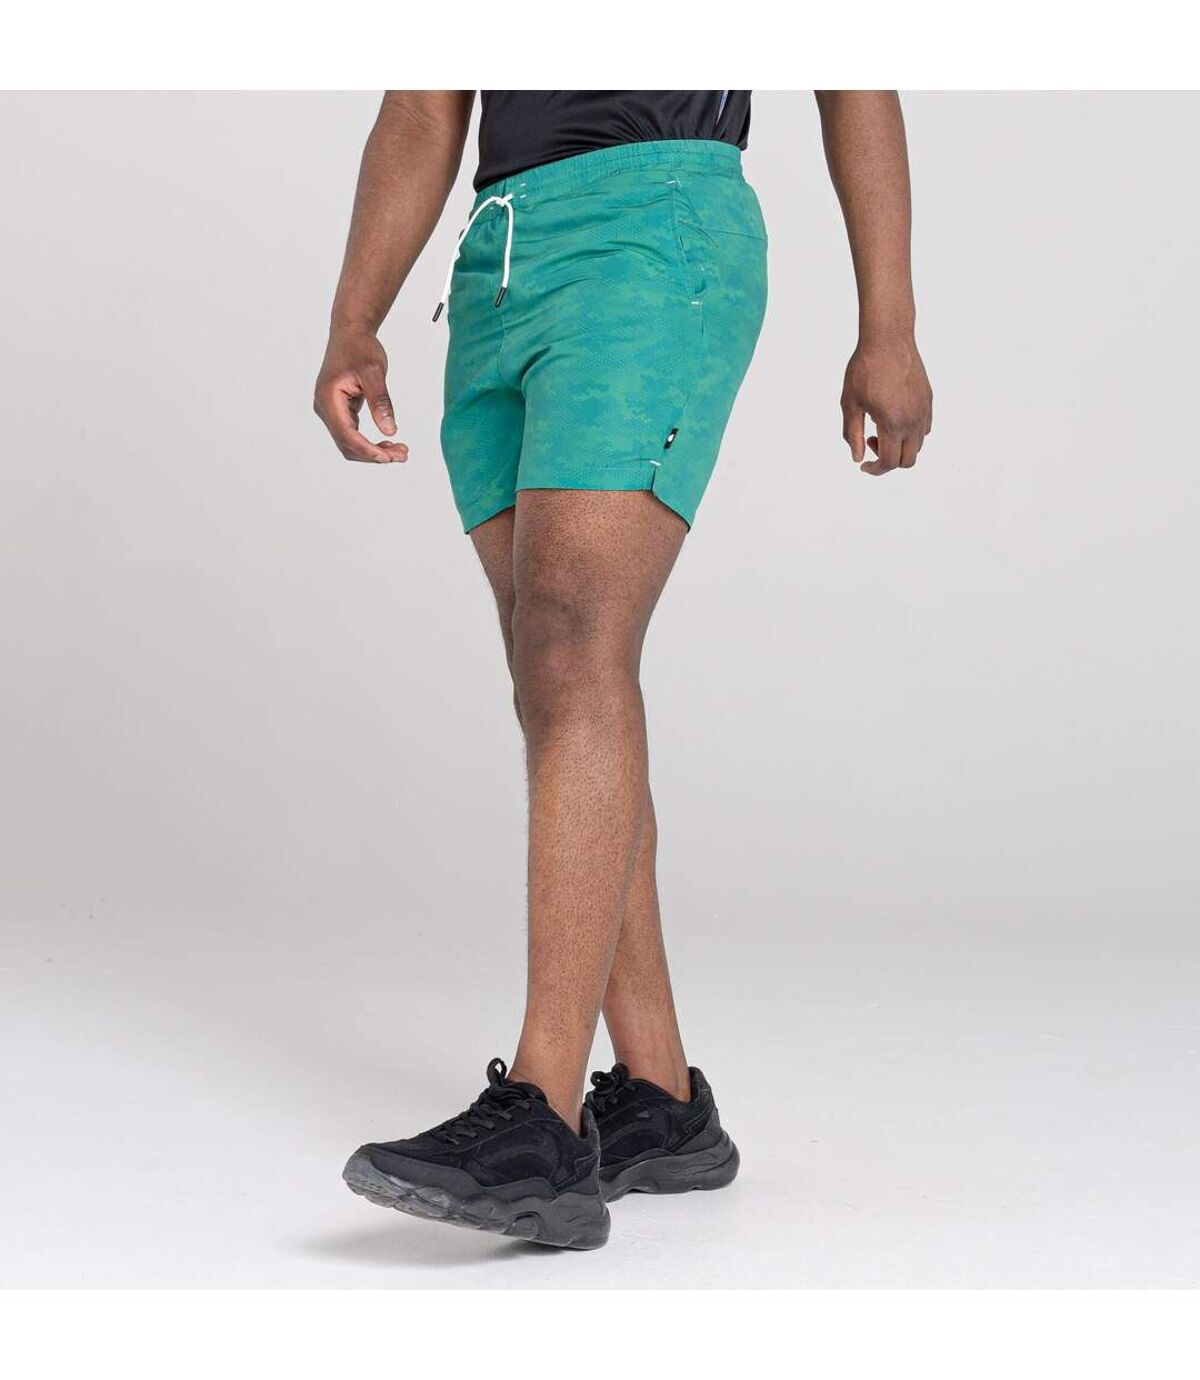 Dare 2B Mens Retread Lightweight Shorts (Jellybean Green) - UTRG5847